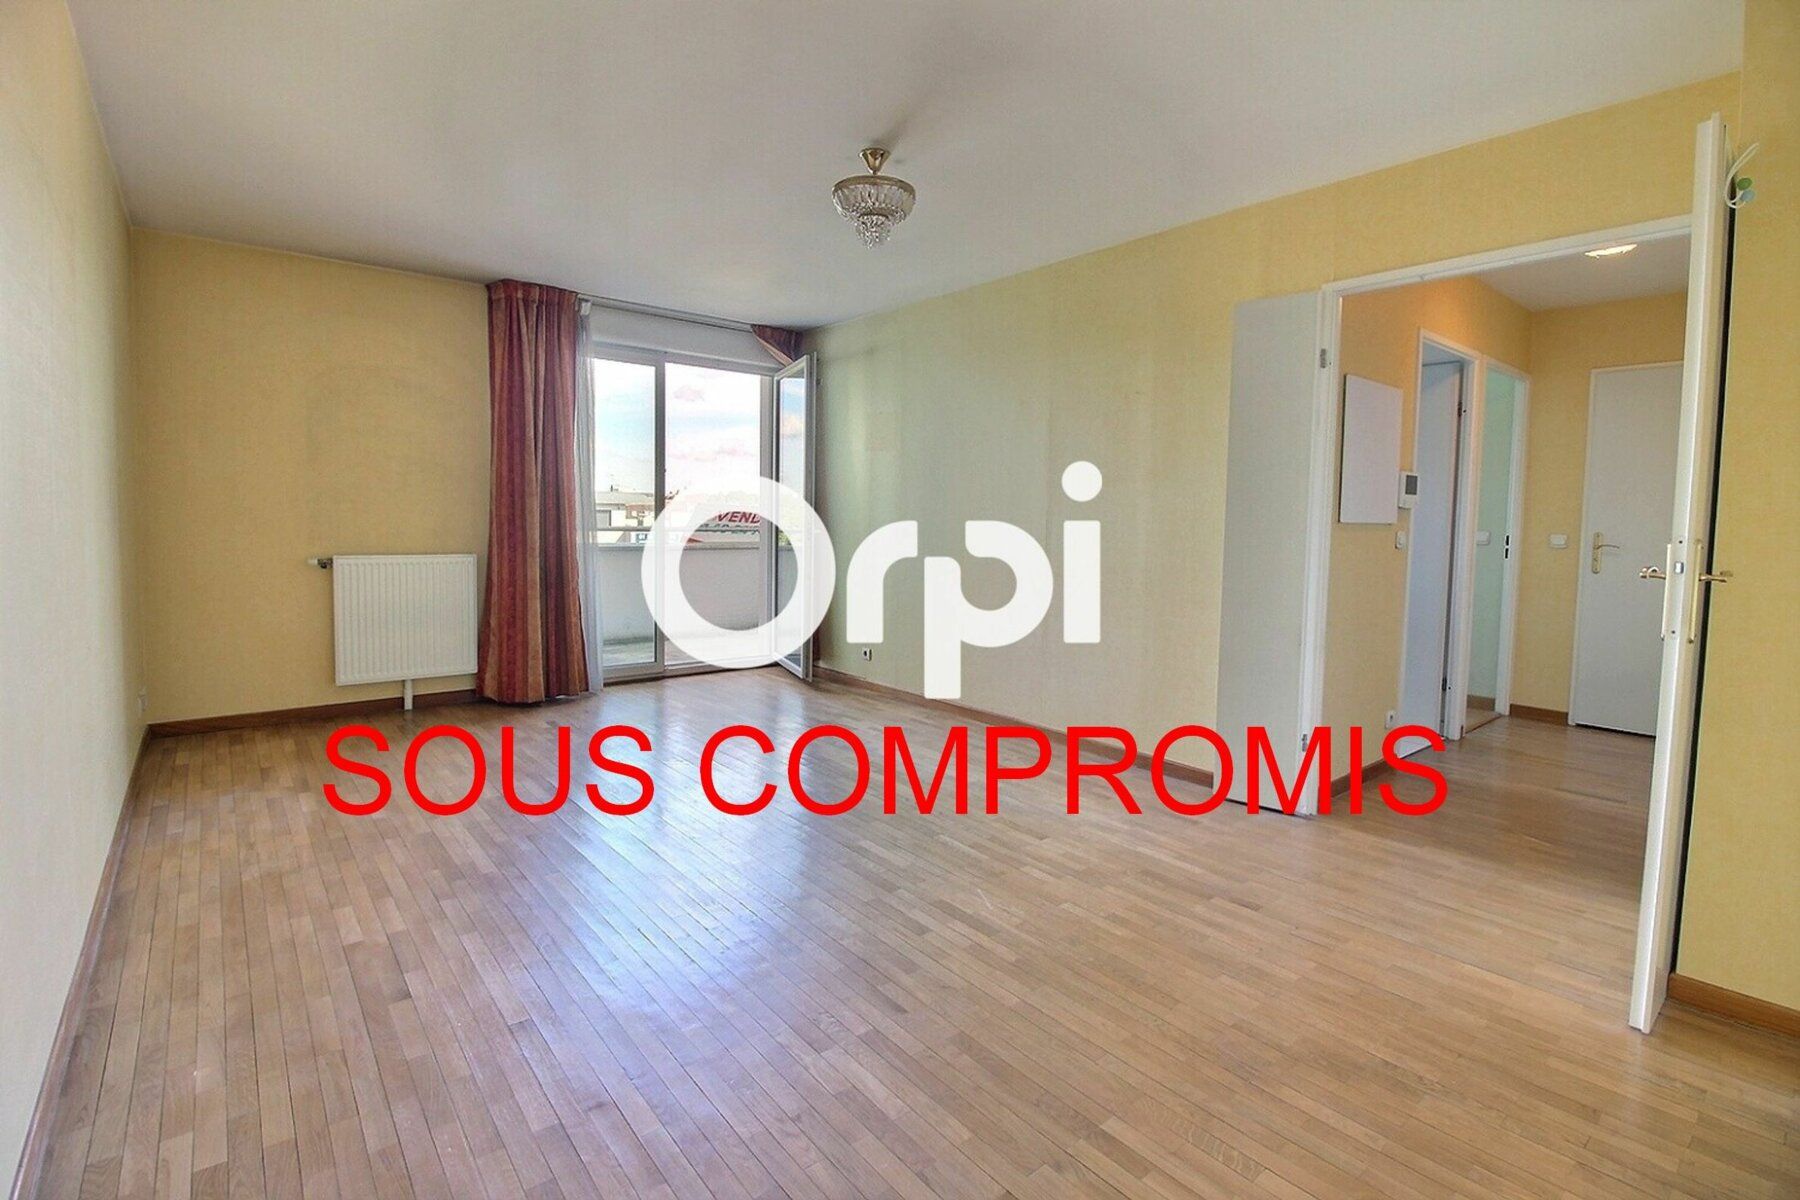 Appartement à vendre 2 46m2 à Viry-Châtillon vignette-1